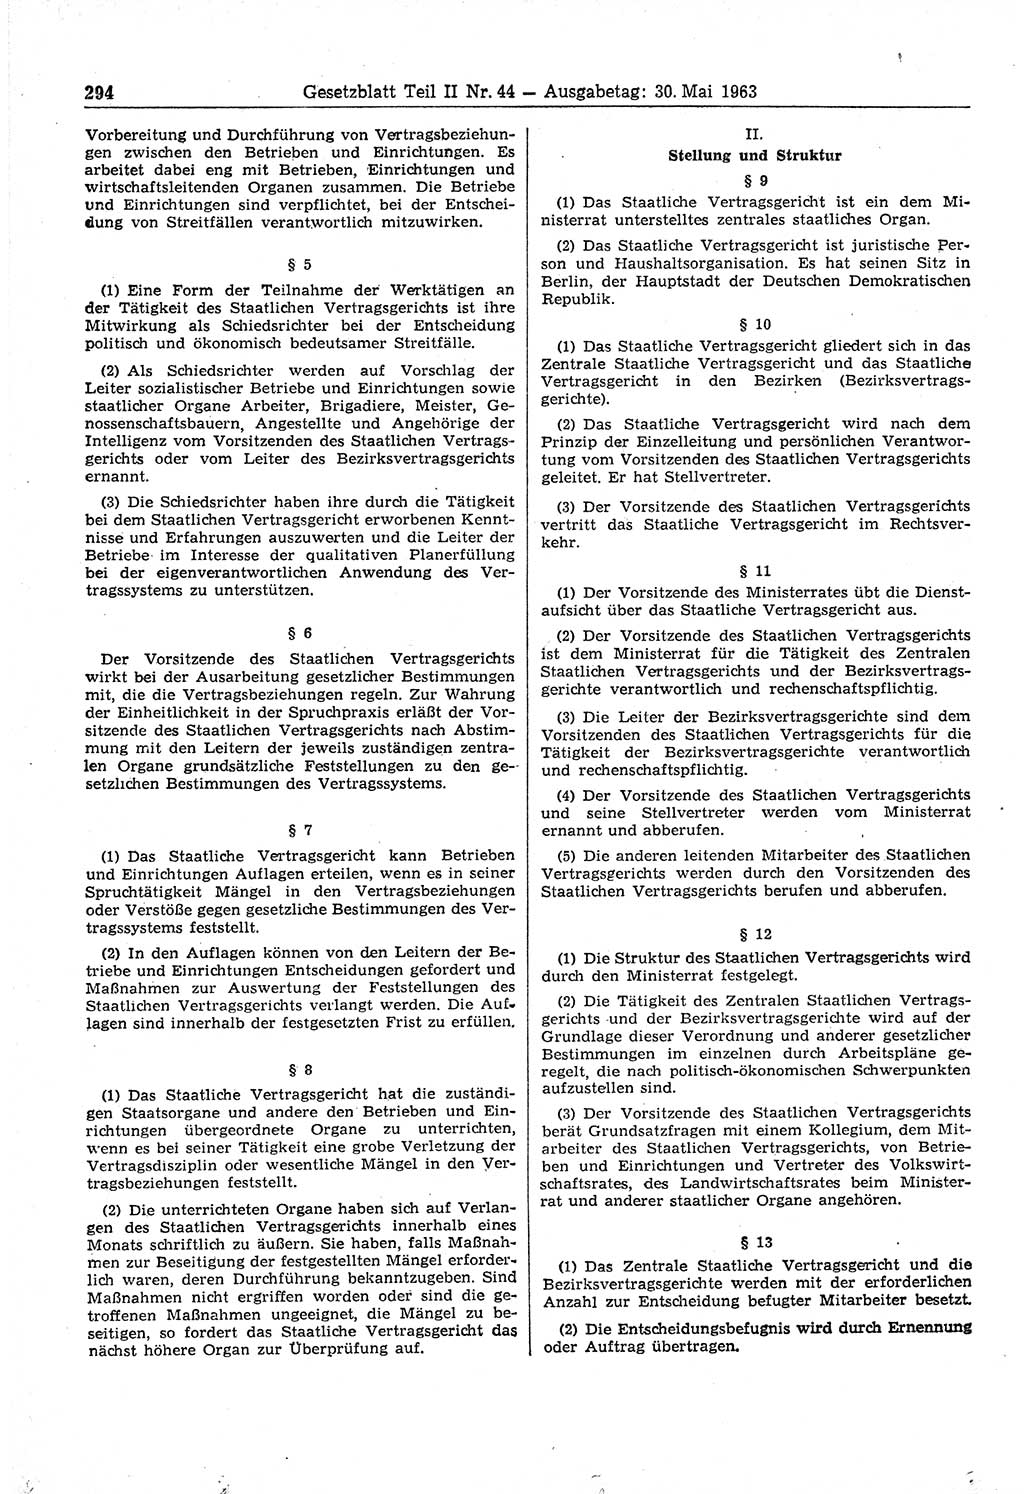 Gesetzblatt (GBl.) der Deutschen Demokratischen Republik (DDR) Teil ⅠⅠ 1963, Seite 294 (GBl. DDR ⅠⅠ 1963, S. 294)